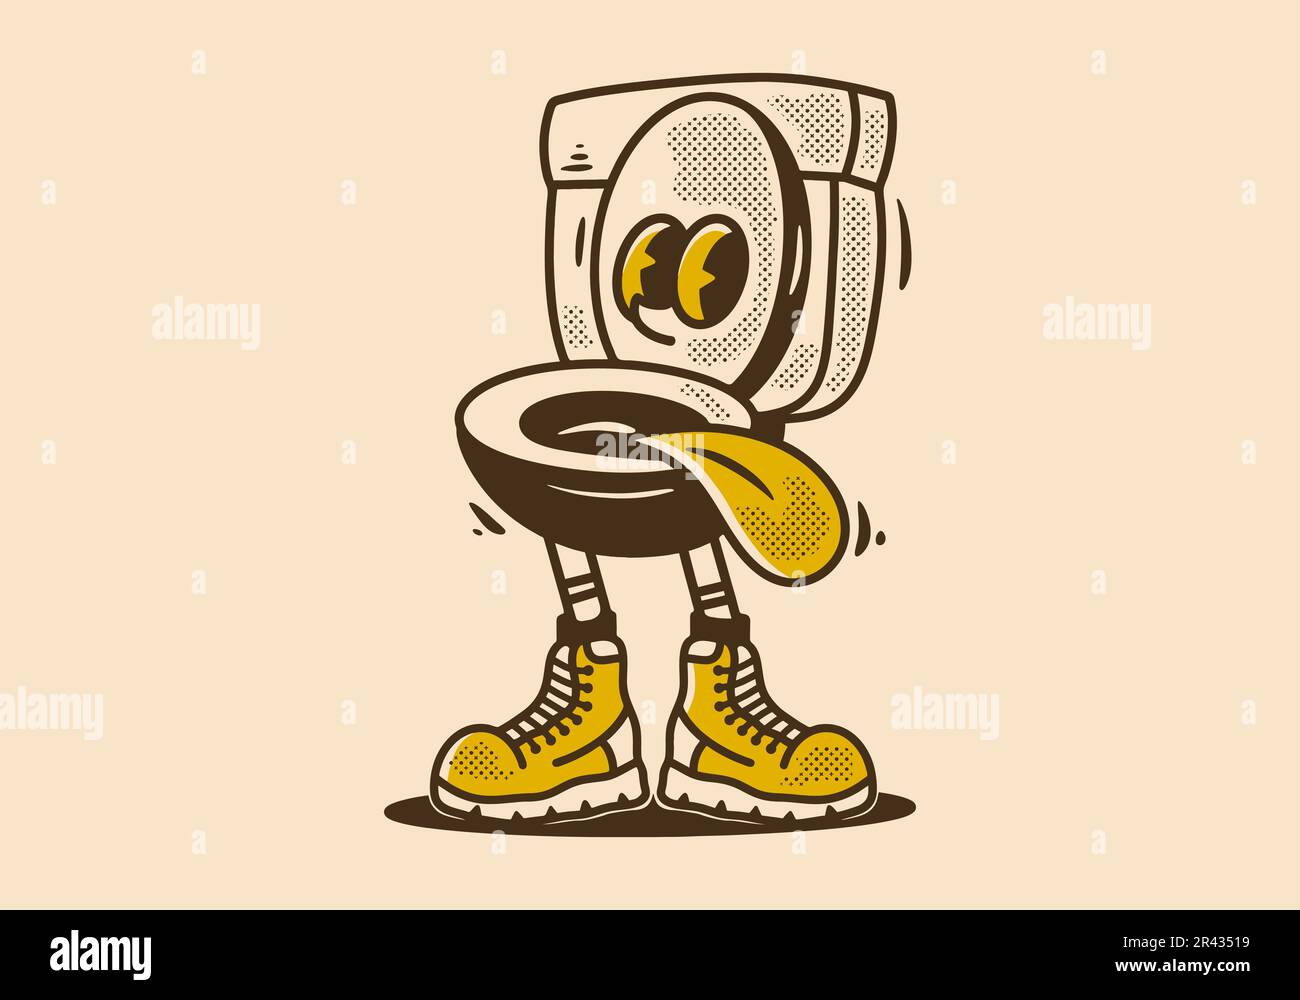 Dessin d'illustration de personnage de mascotte d'une toilette dans un style vintage Illustration de Vecteur